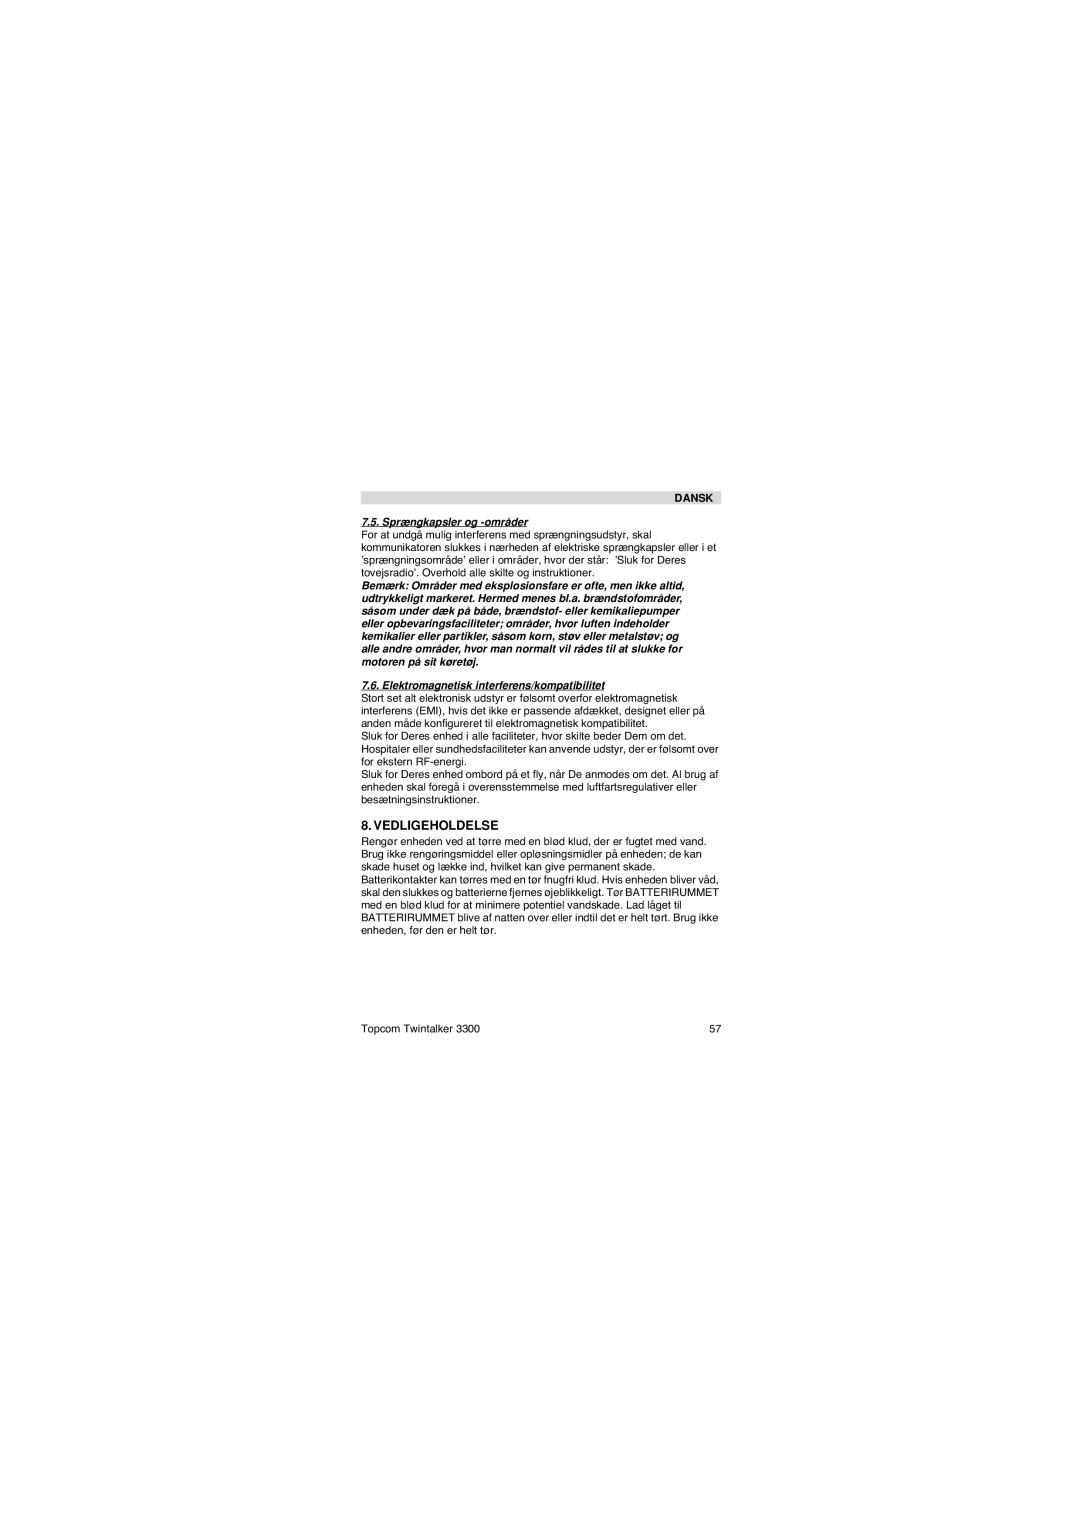 Topcom 3300 user manual Vedligeholdelse, Sprængkapsler og -områder 